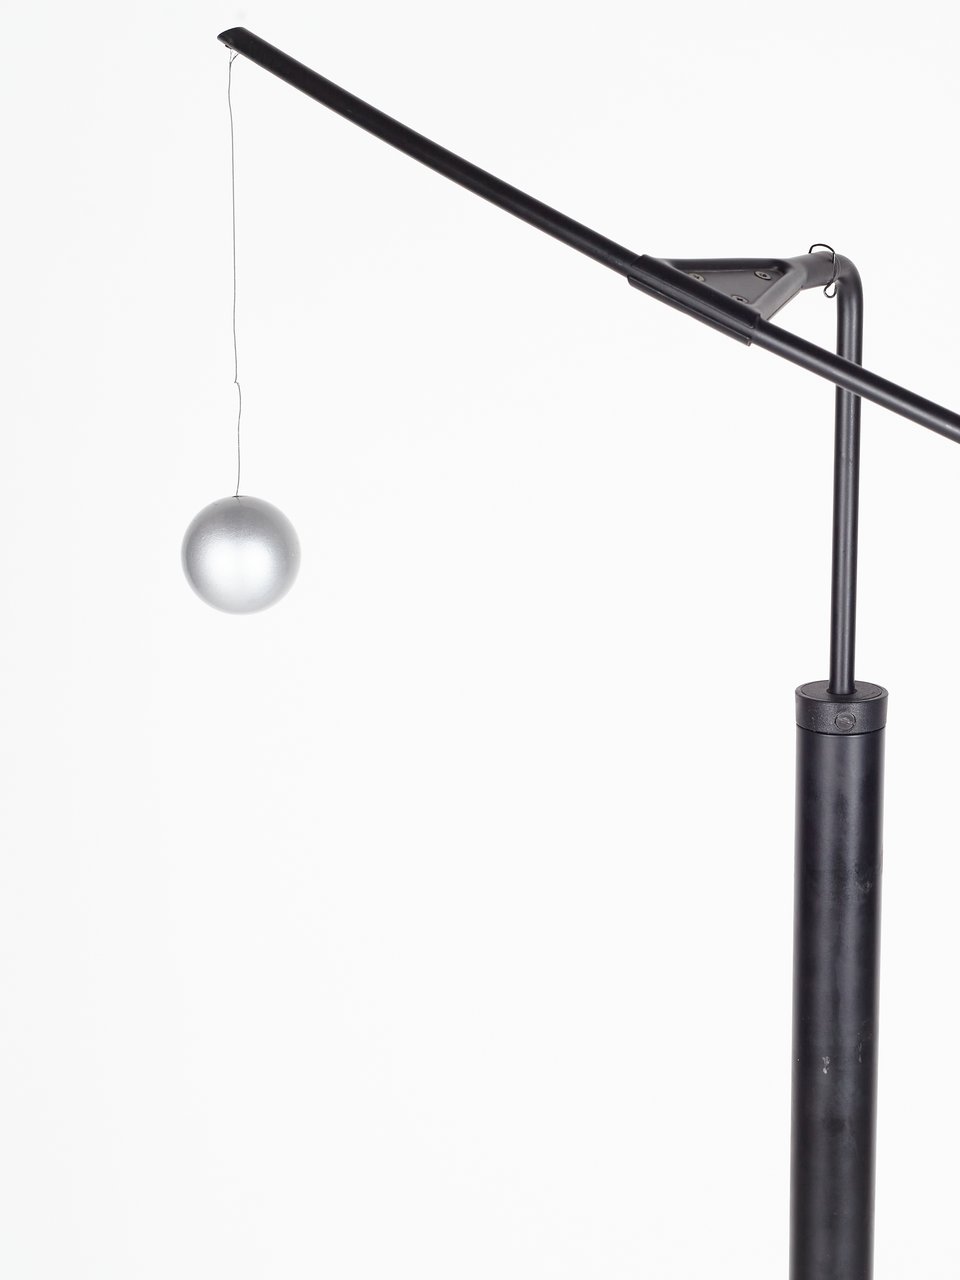 Artemide 'Nestore' design lamp Carlo Forcolini image 6